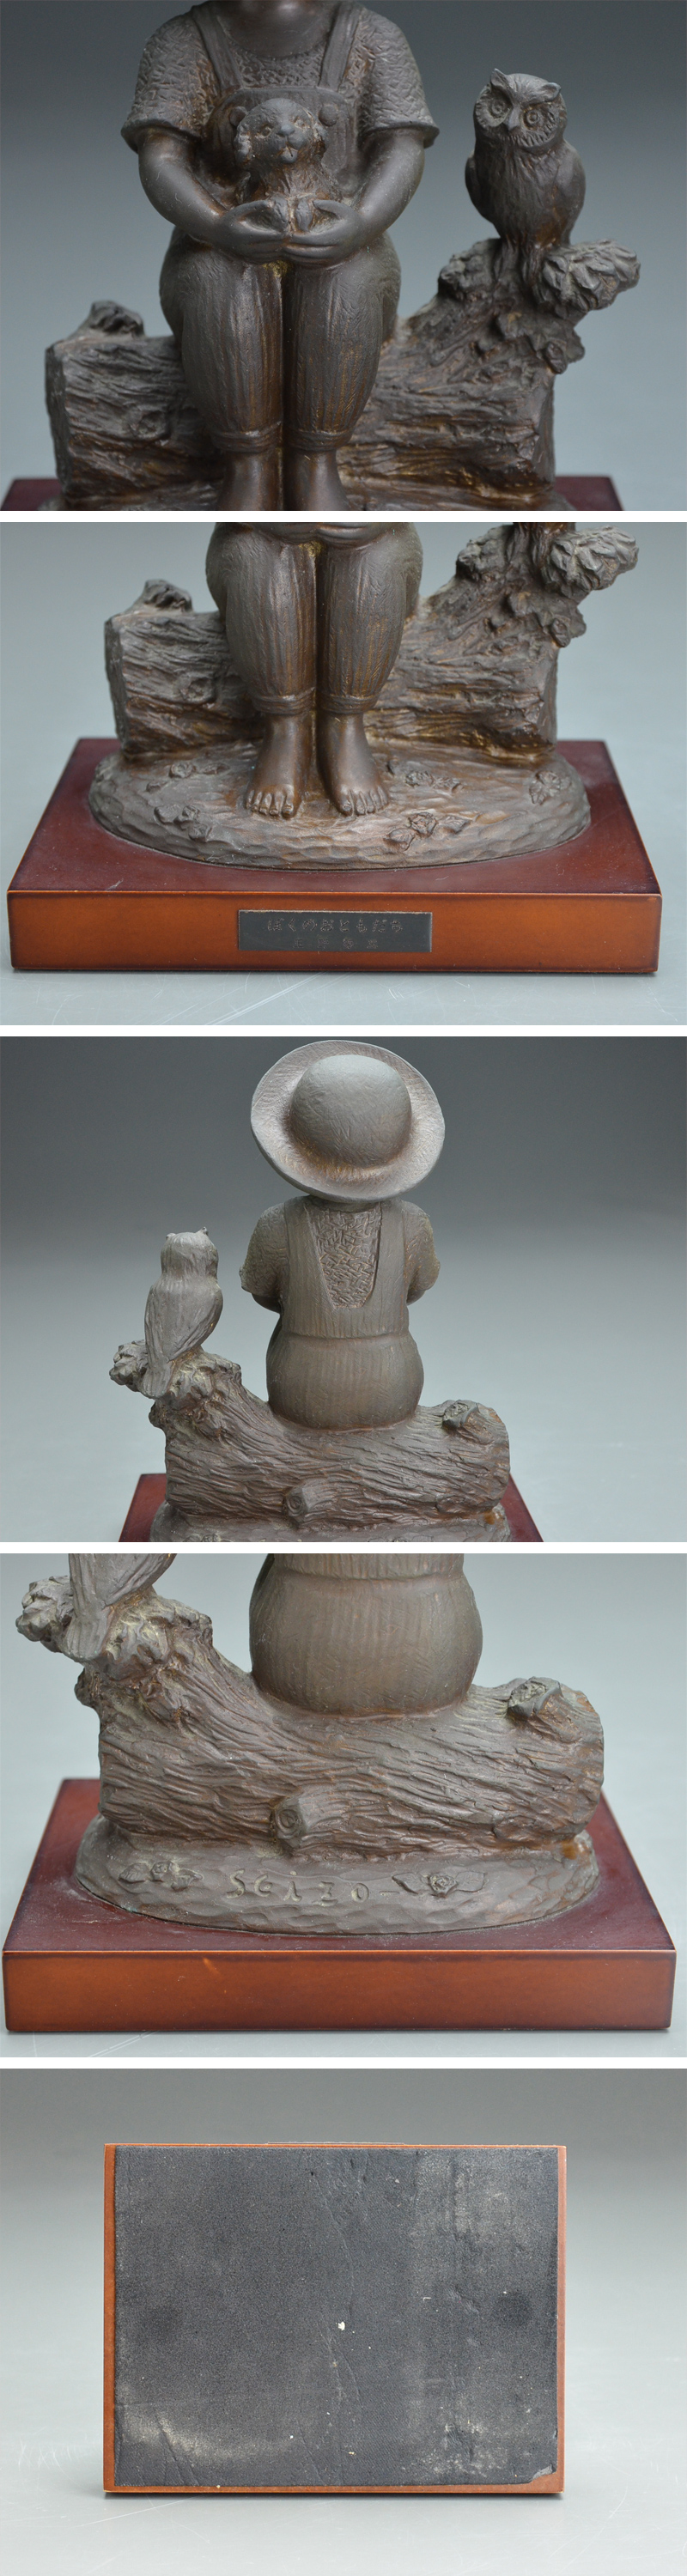 通販直営彫刻家 玉野 勢三 作 子供のブロンズ像『ぼくのおともだち』高さ24.5㎝ 06i841 西洋彫刻